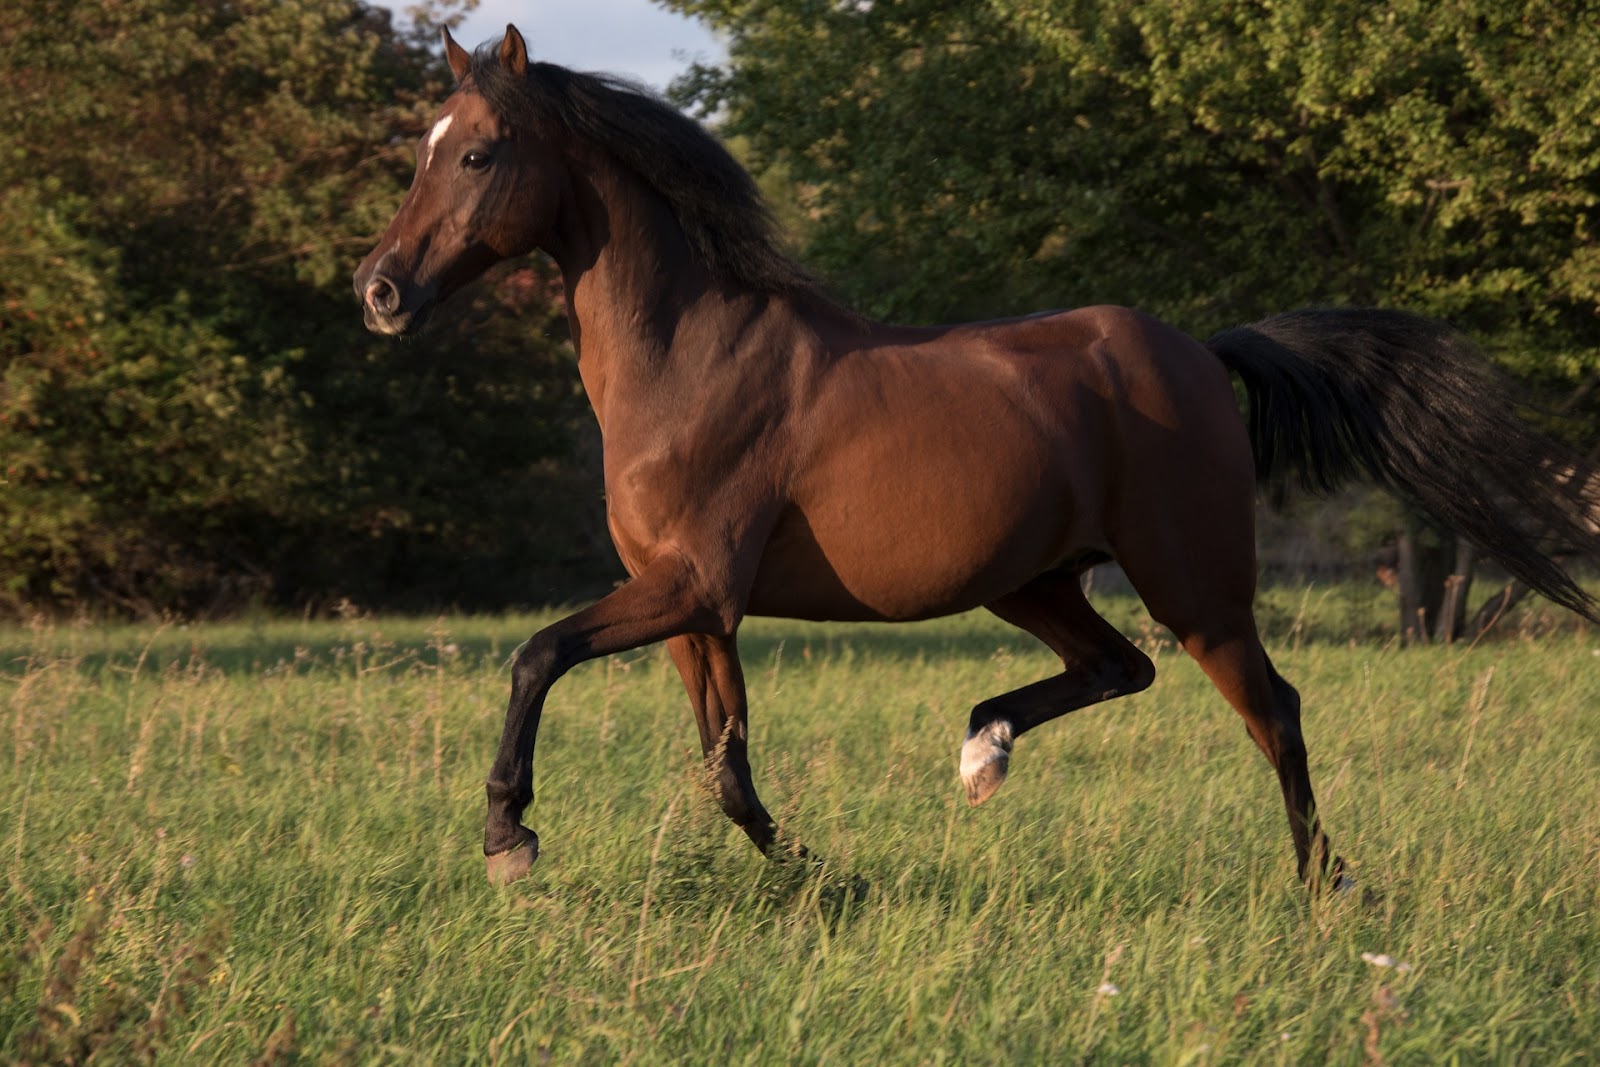 horse trotting in open field